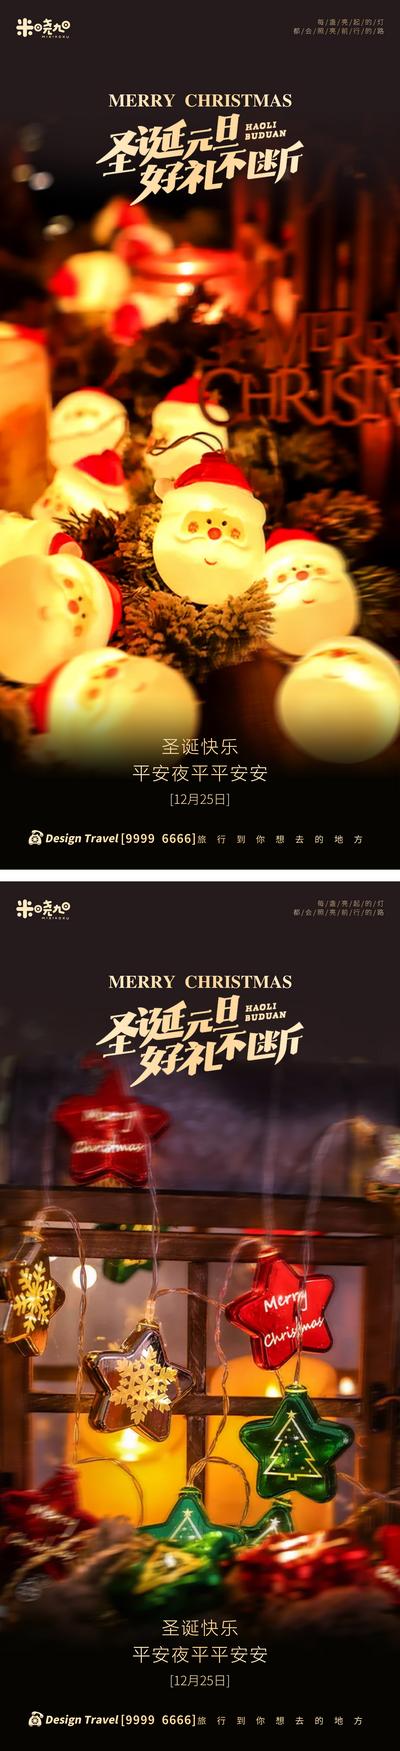 南门网 广告 海报 节日 圣诞节 西方 光效 夜景 系列